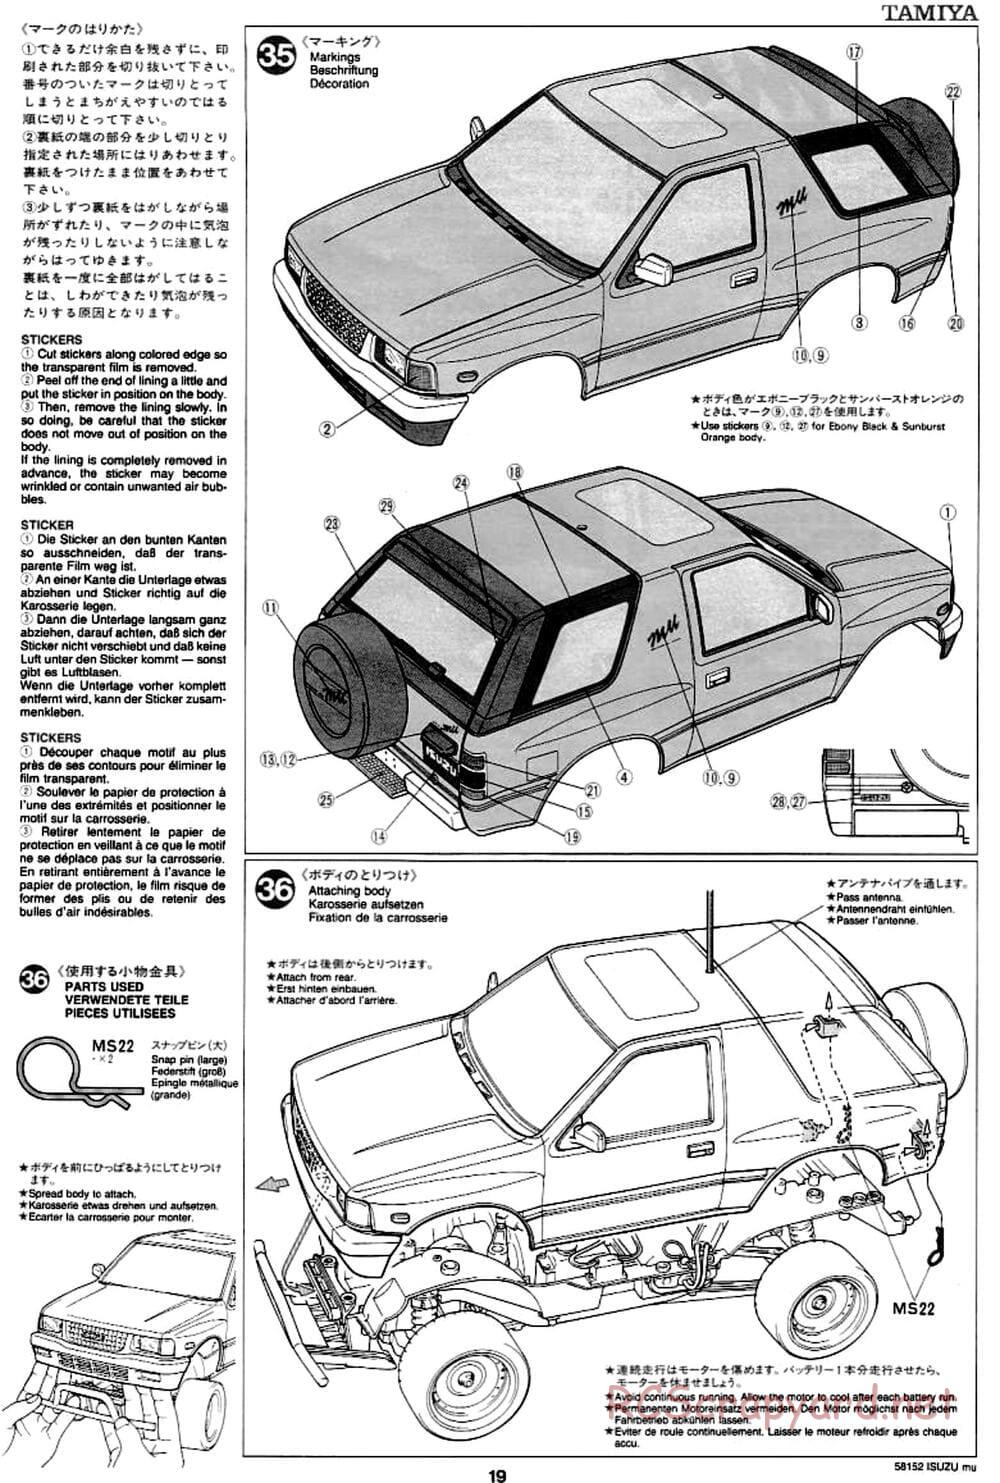 Tamiya - Isuzu Mu - CC-01 Chassis - Manual - Page 19